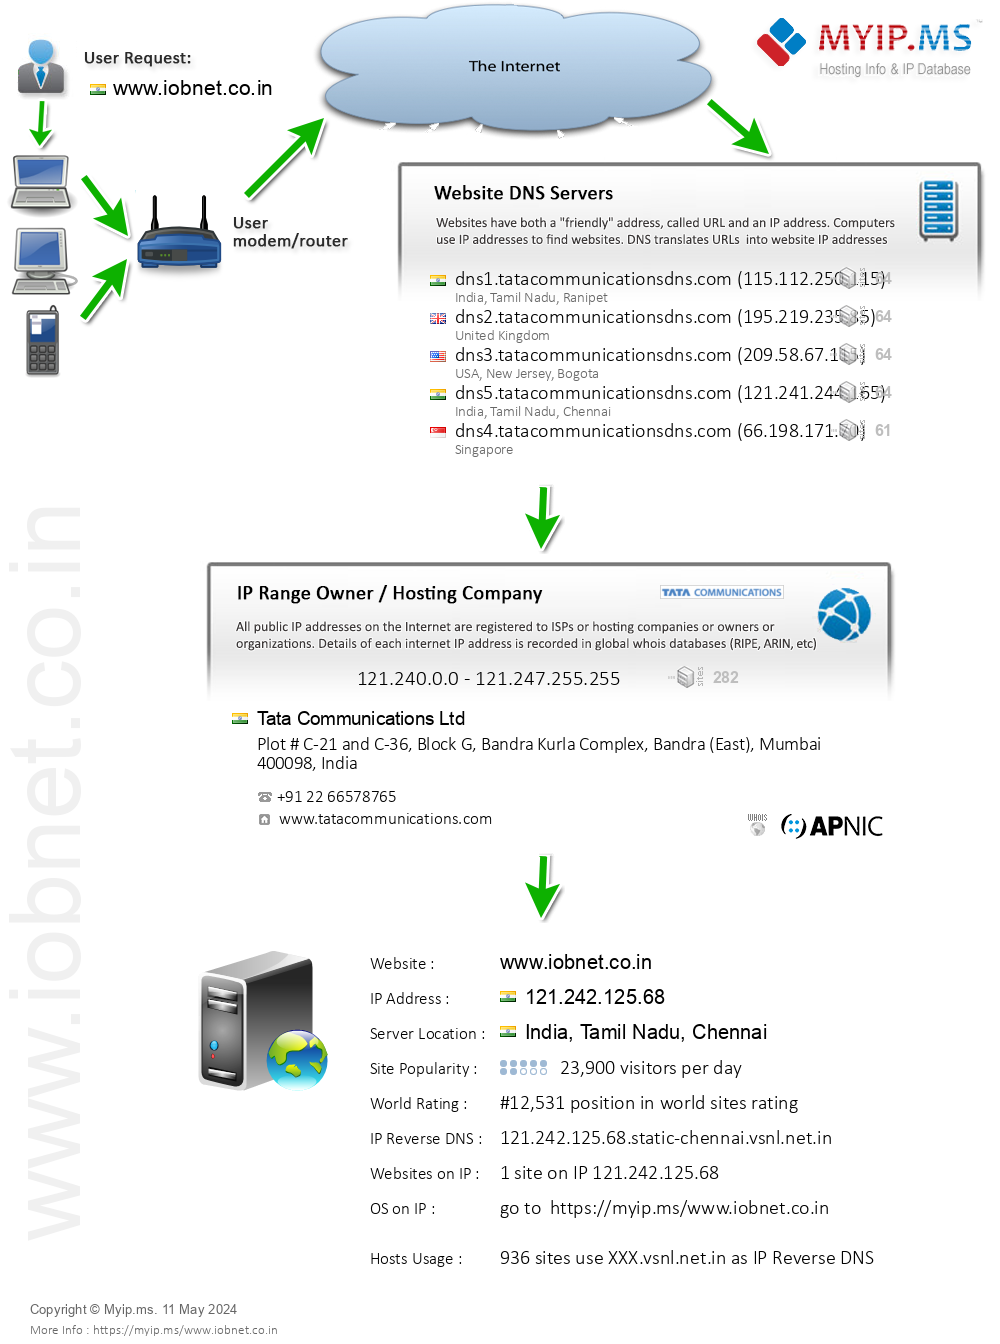 Iobnet.co.in - Website Hosting Visual IP Diagram